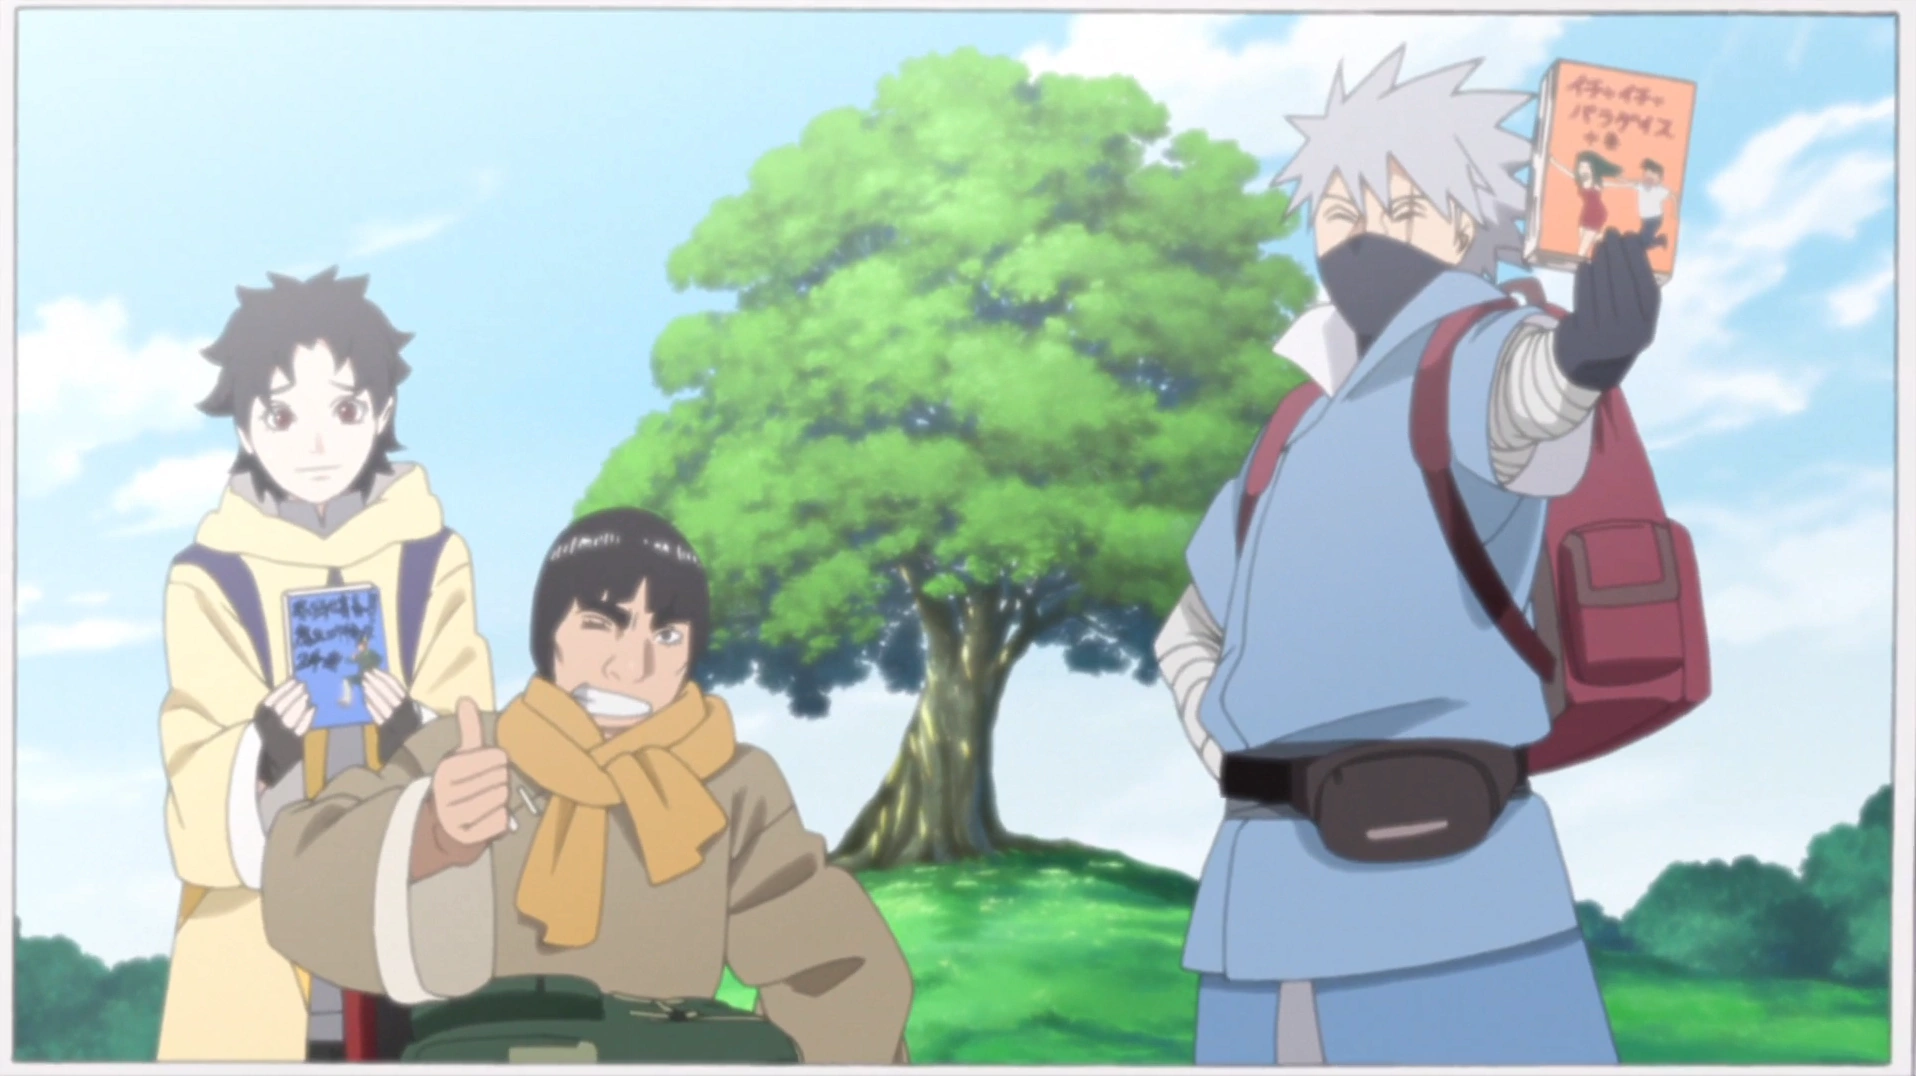 Naruto Online - Asuma, Kakashi e Guy são 3 jounins da Aldeia da Folha, para  vocês qual seria a ordem de força deles? Podem dar sua opinião à vontade.